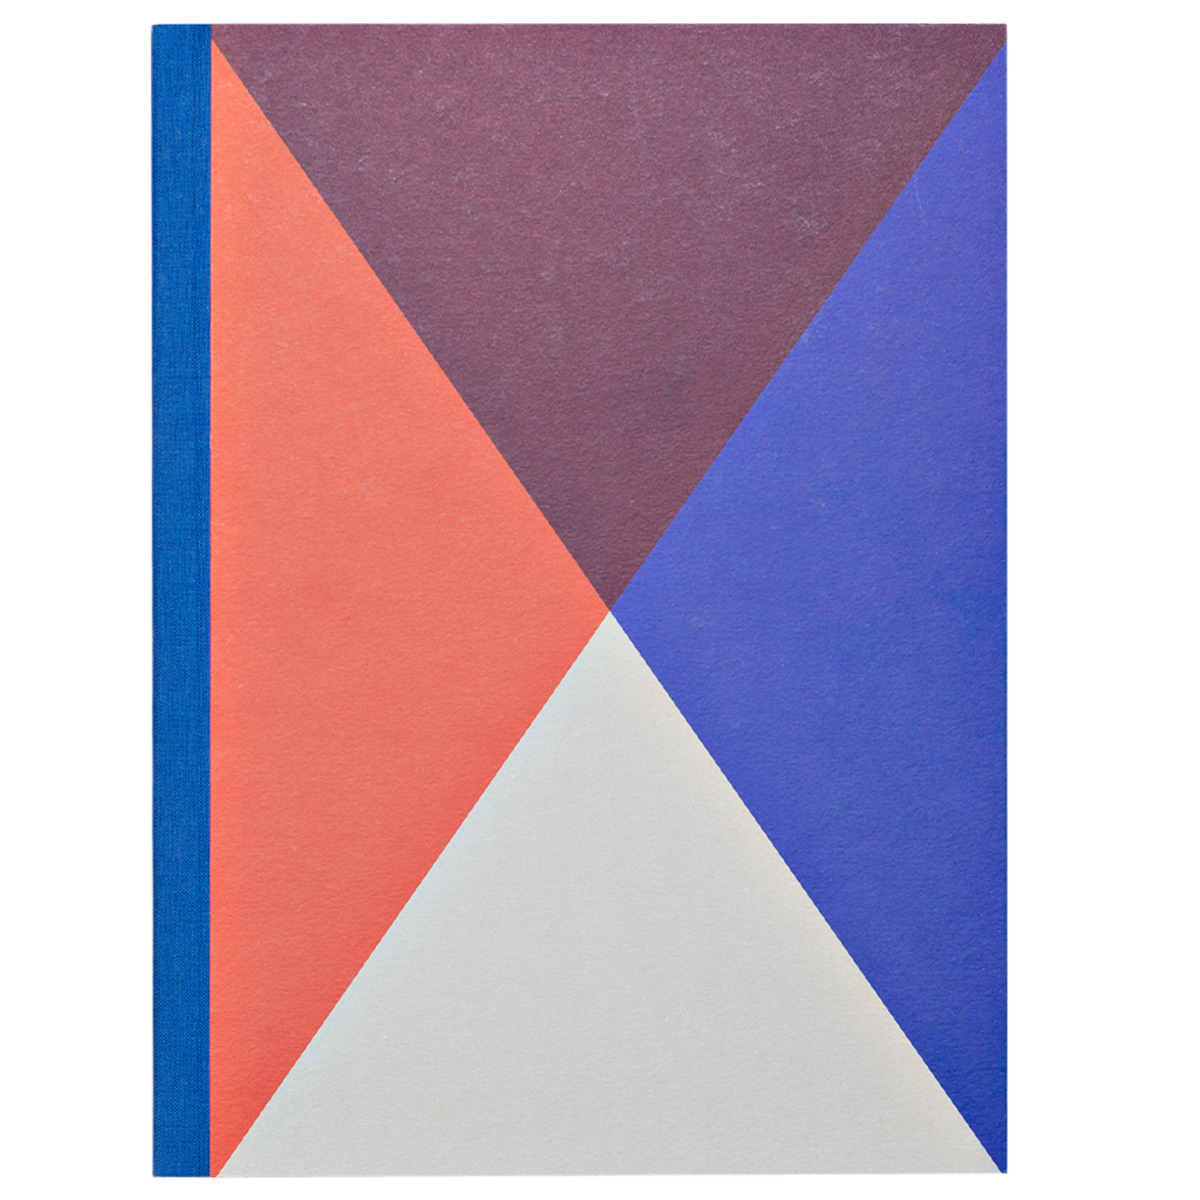 Taccuino Design Triangles by Rubbettino